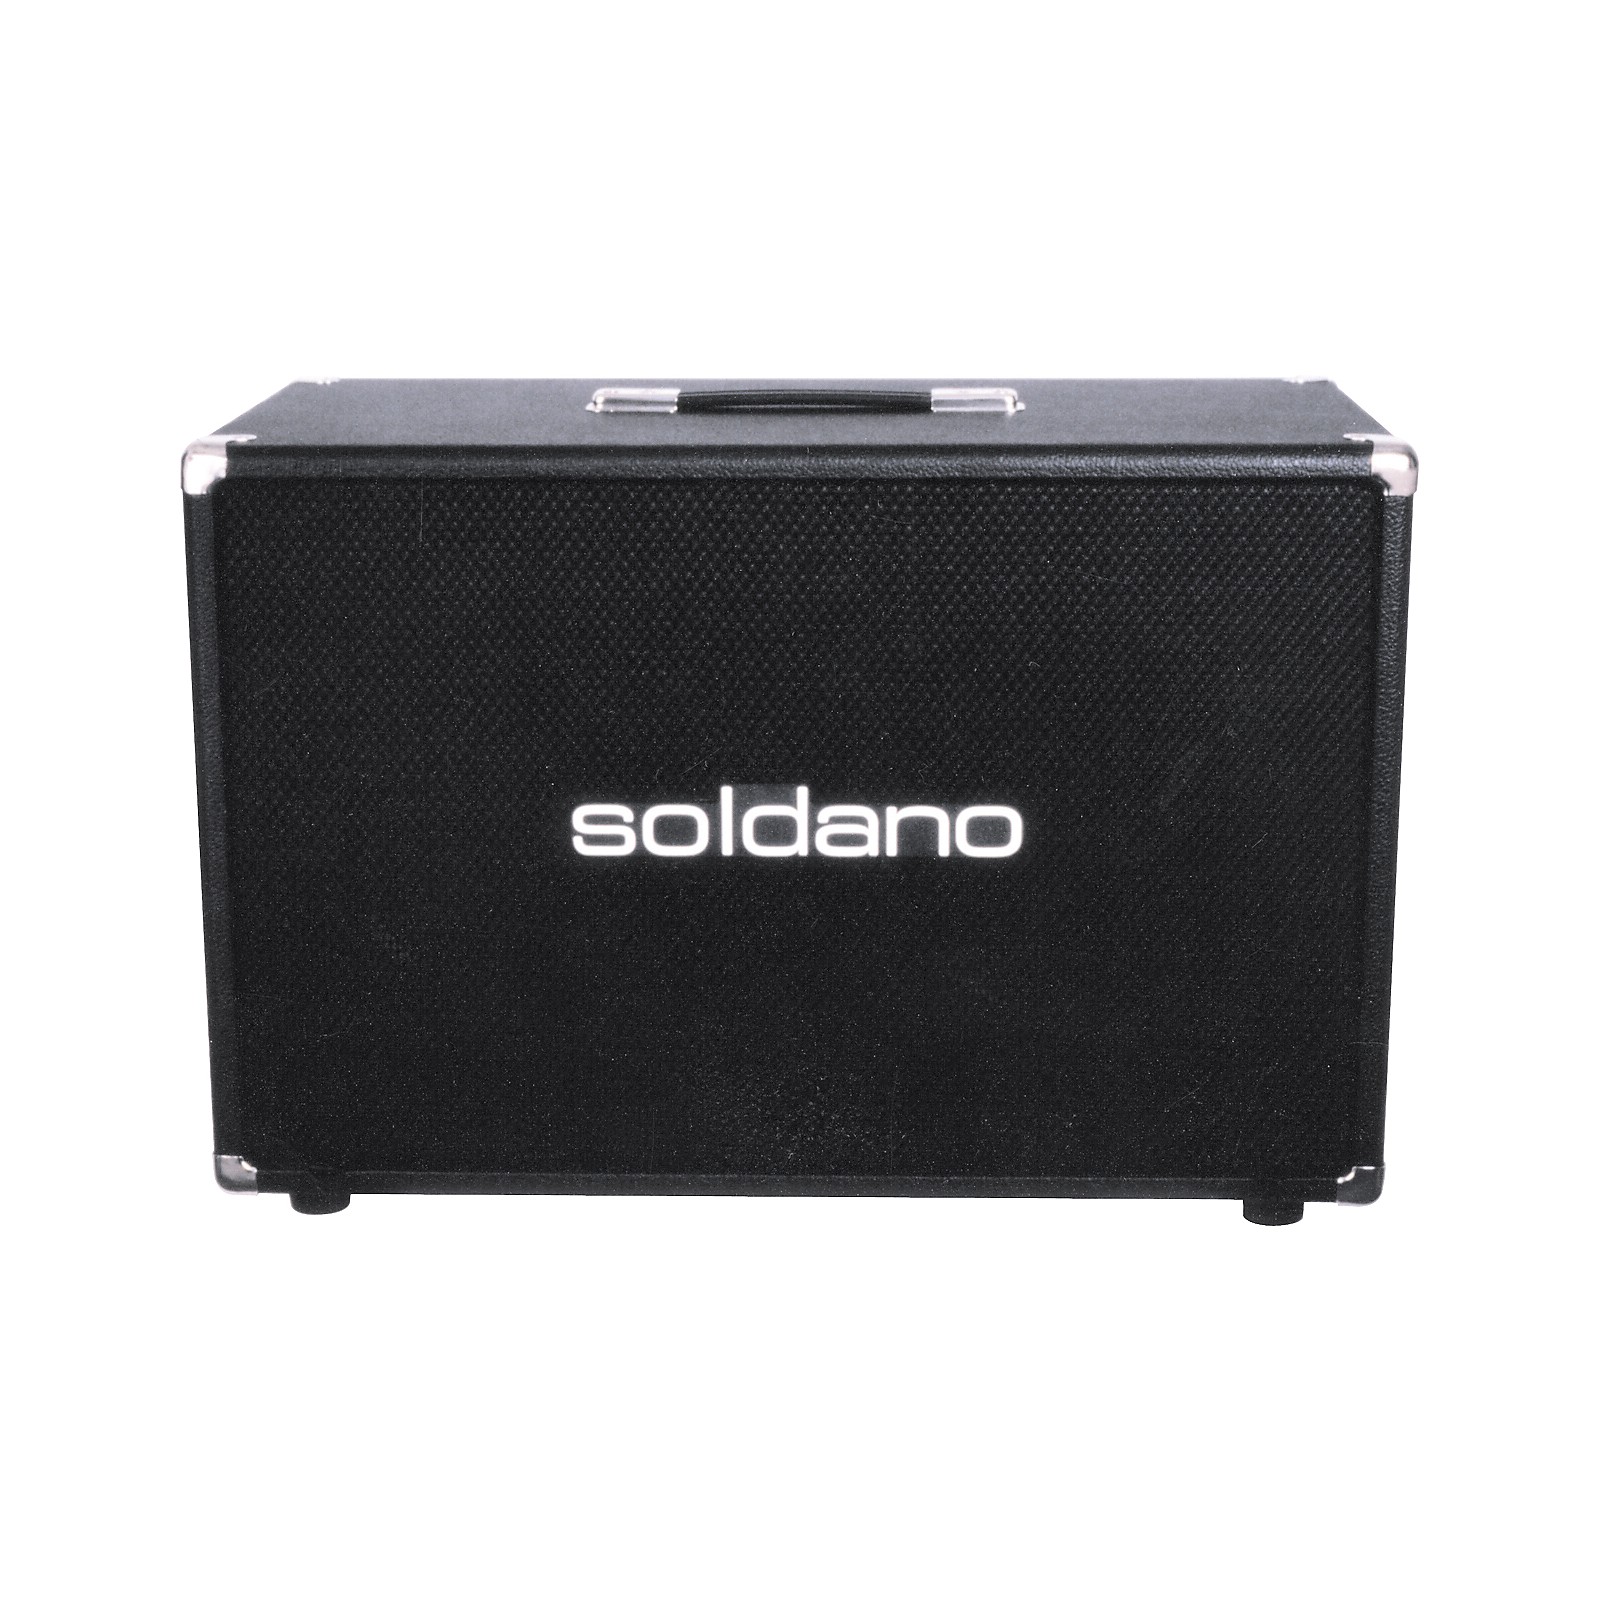 Soldano 2x12 Speaker Cabinet Musician S Friend